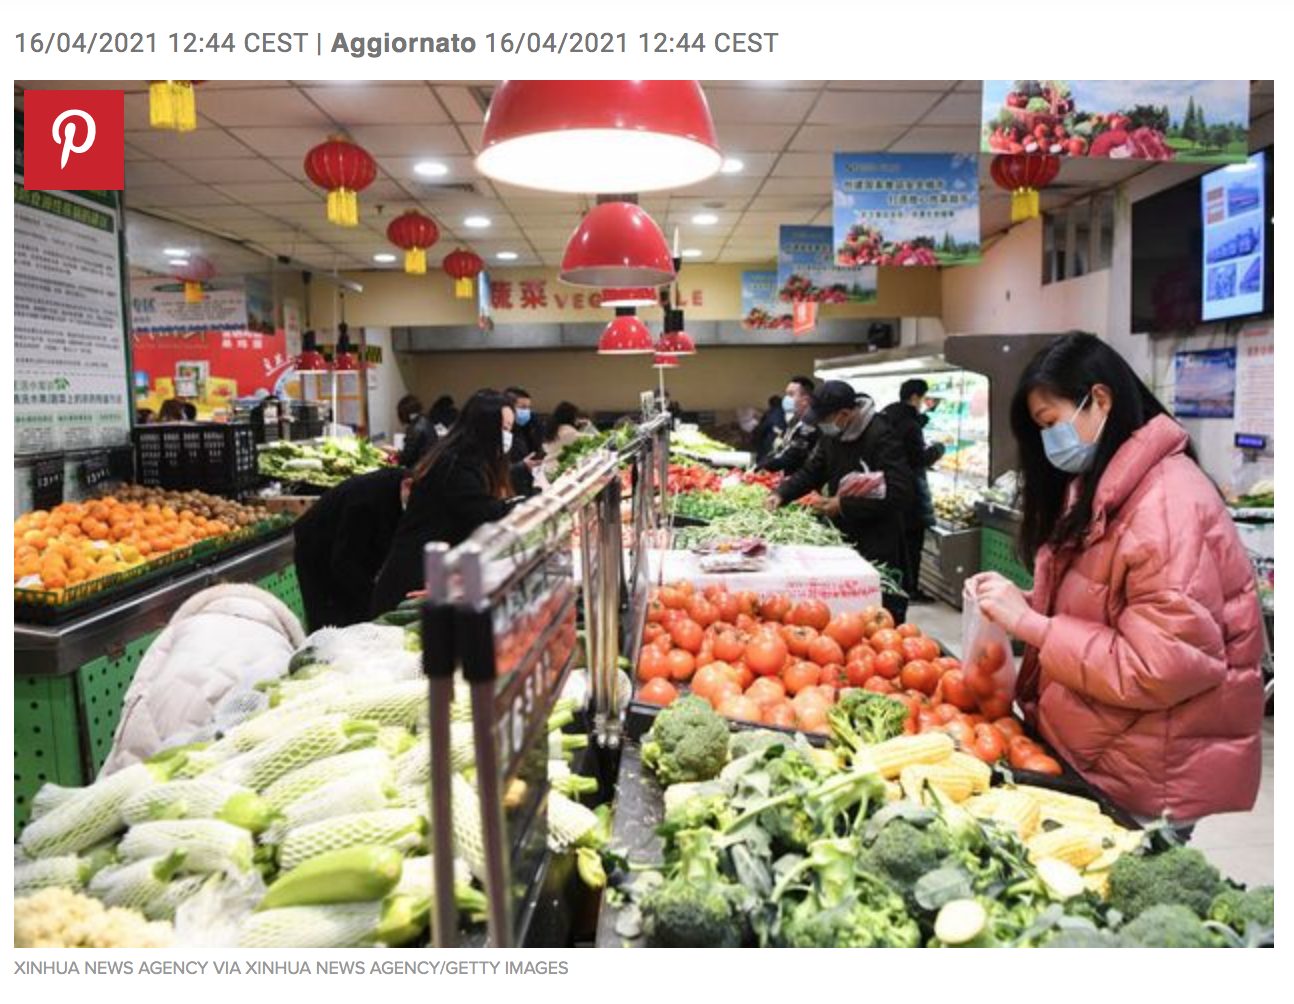 Le nuove sfide per l’Italia in Asia sono la City Diplomacy e la Food Policy